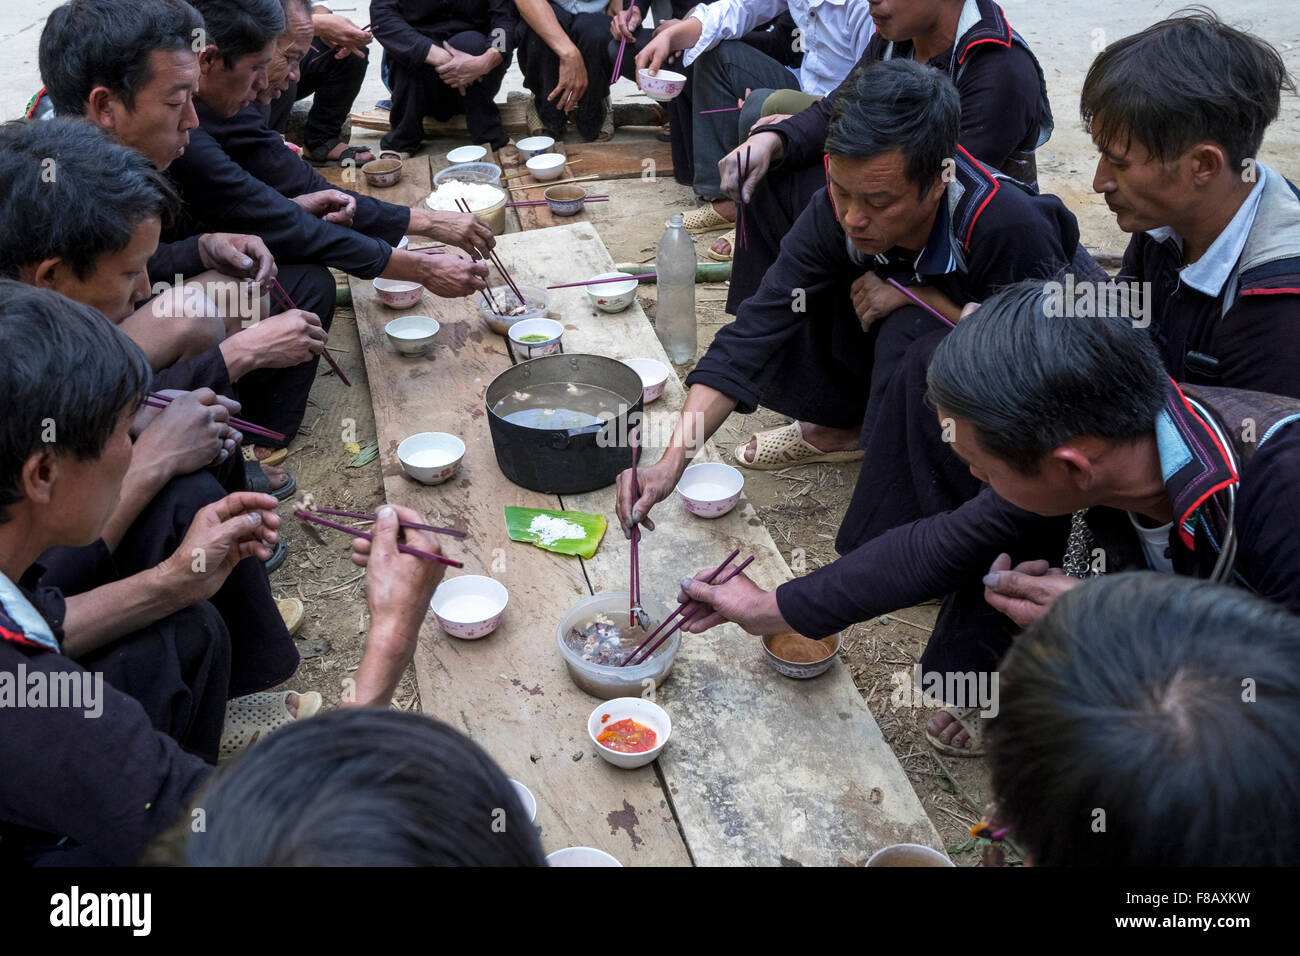 Les hommes Hmong assister à une fête dans une cérémonie funéraire dans le village de Ri Sa, Lao Cai Province, Vietnam. Banque D'Images